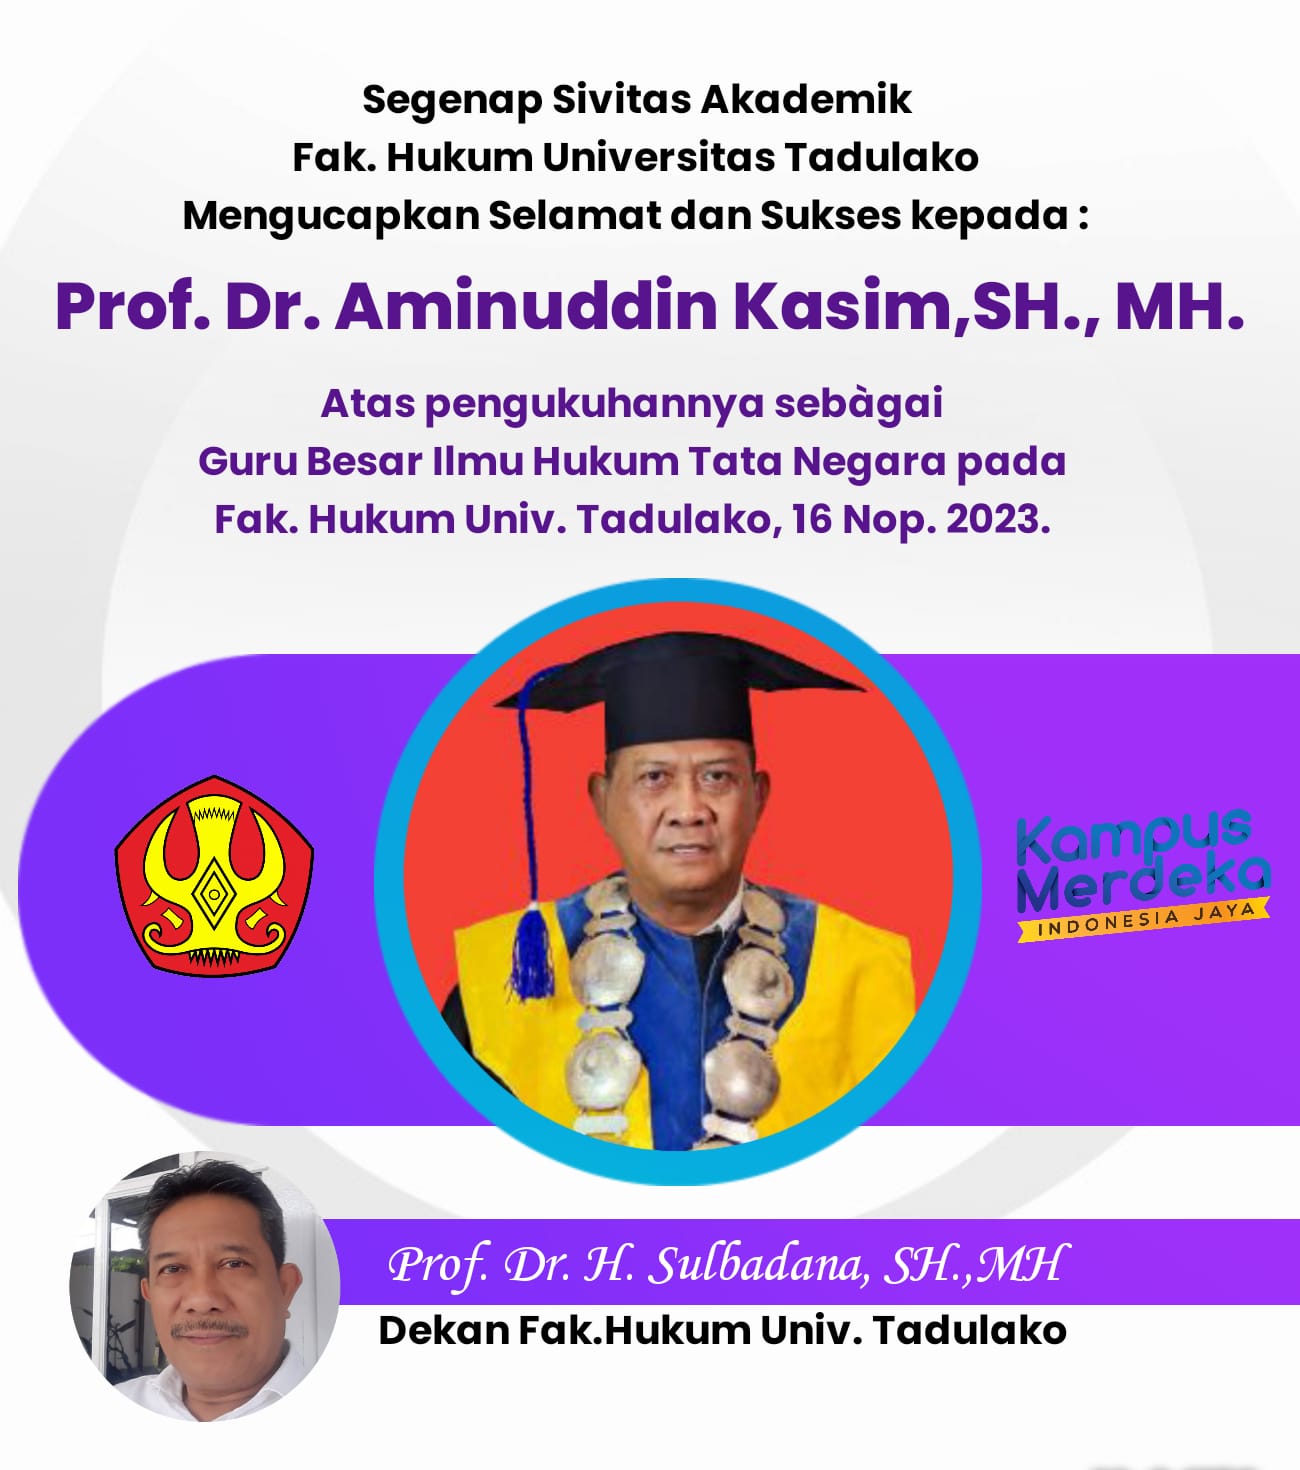 Dekan Fakhum Ucapkan Selamat Atas Pengukuhan Prof. Aminuddin Sebagai Guru Besar FH-Untad